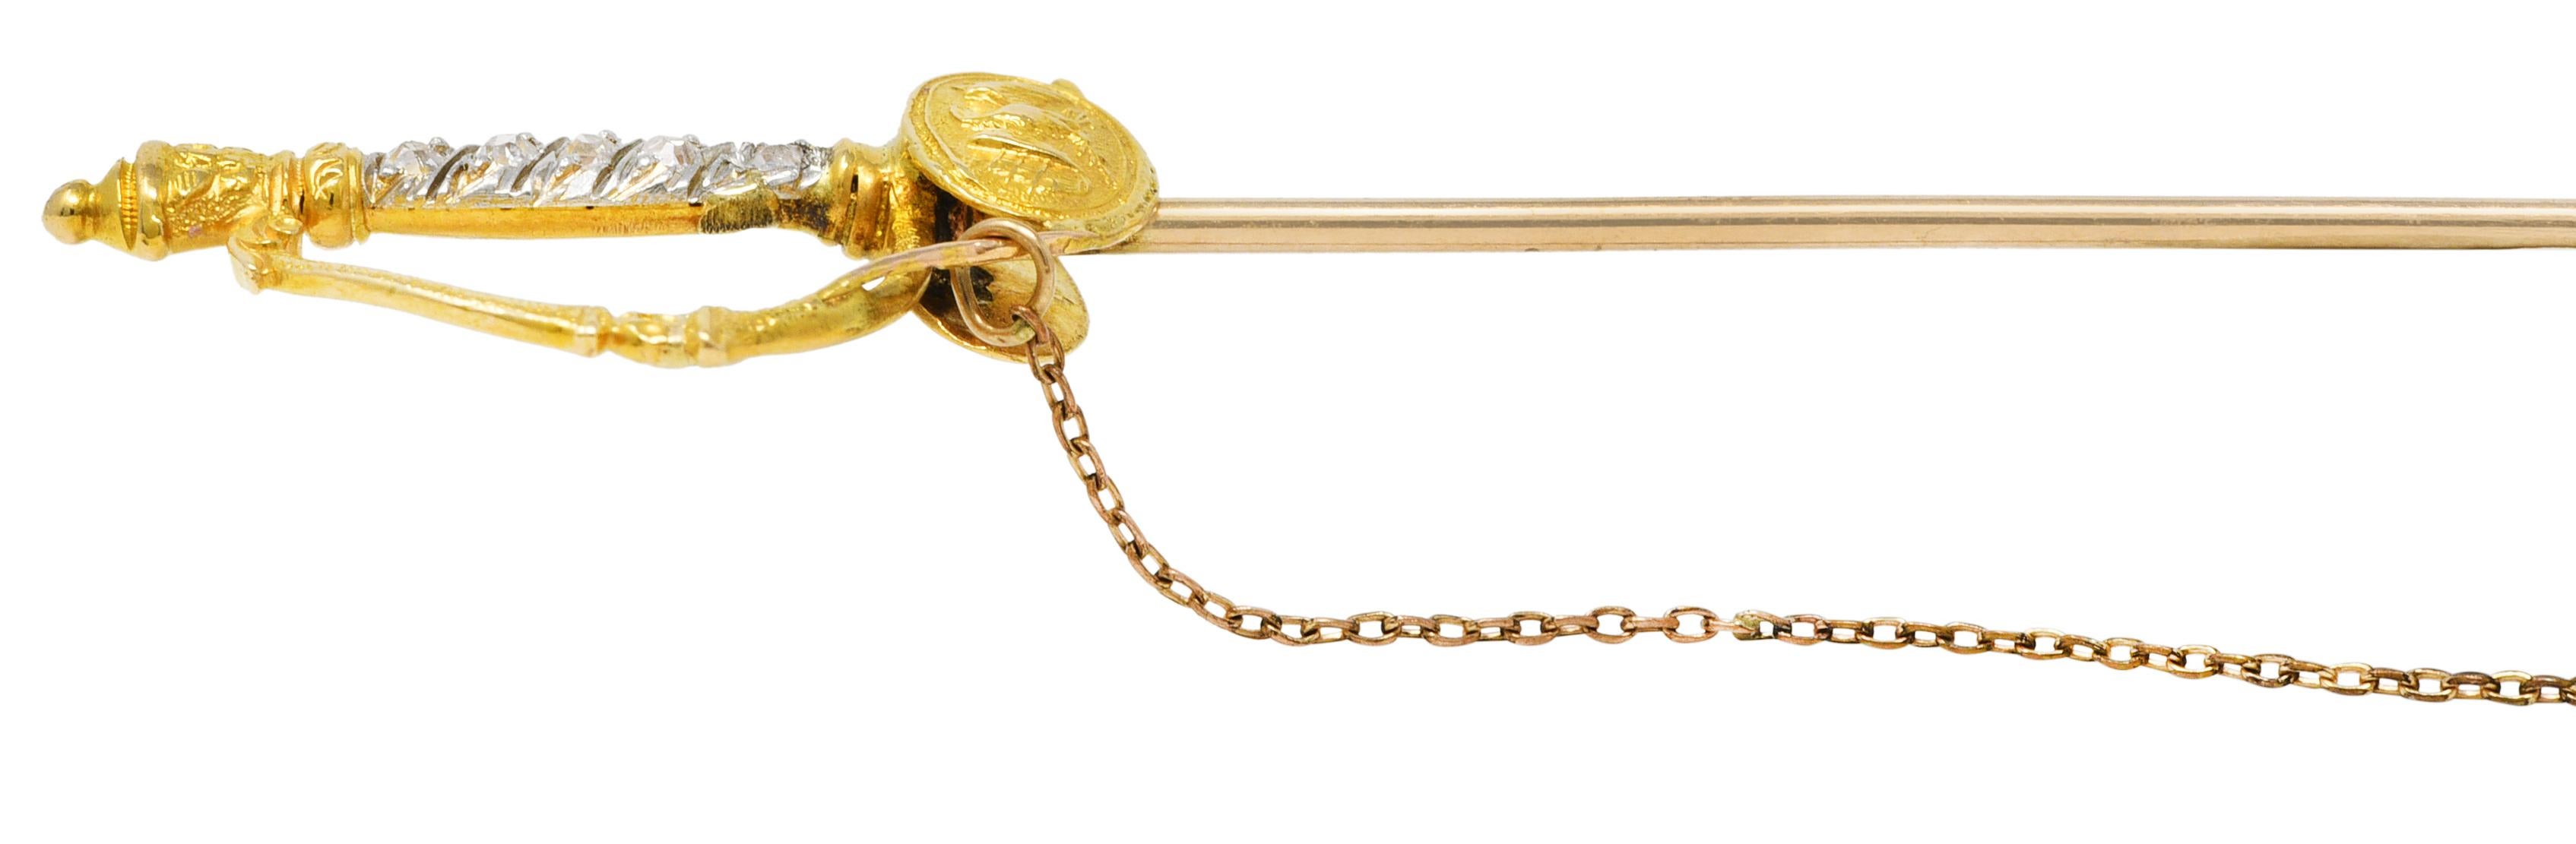 Victorian Diamond Platinum 14 Karat Gold Officer's Sword Antique Jabot Brooch 1